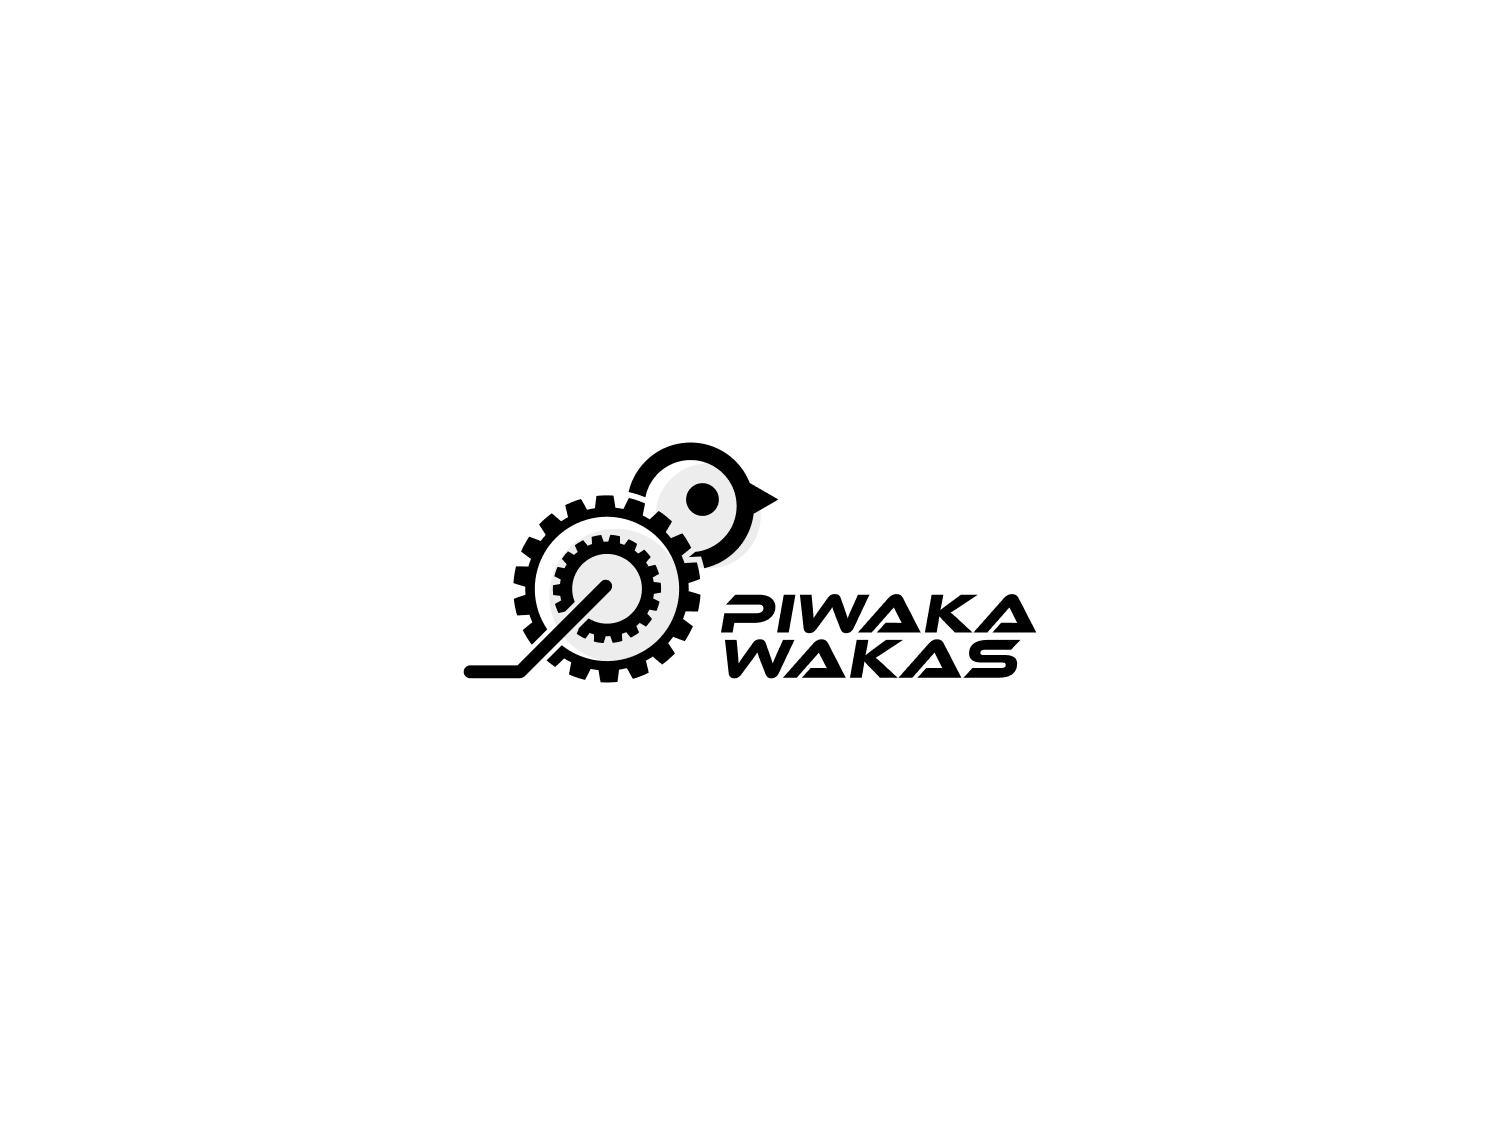 Zwift eCycling Team Logo: Cryo-Gen Piwakawakas